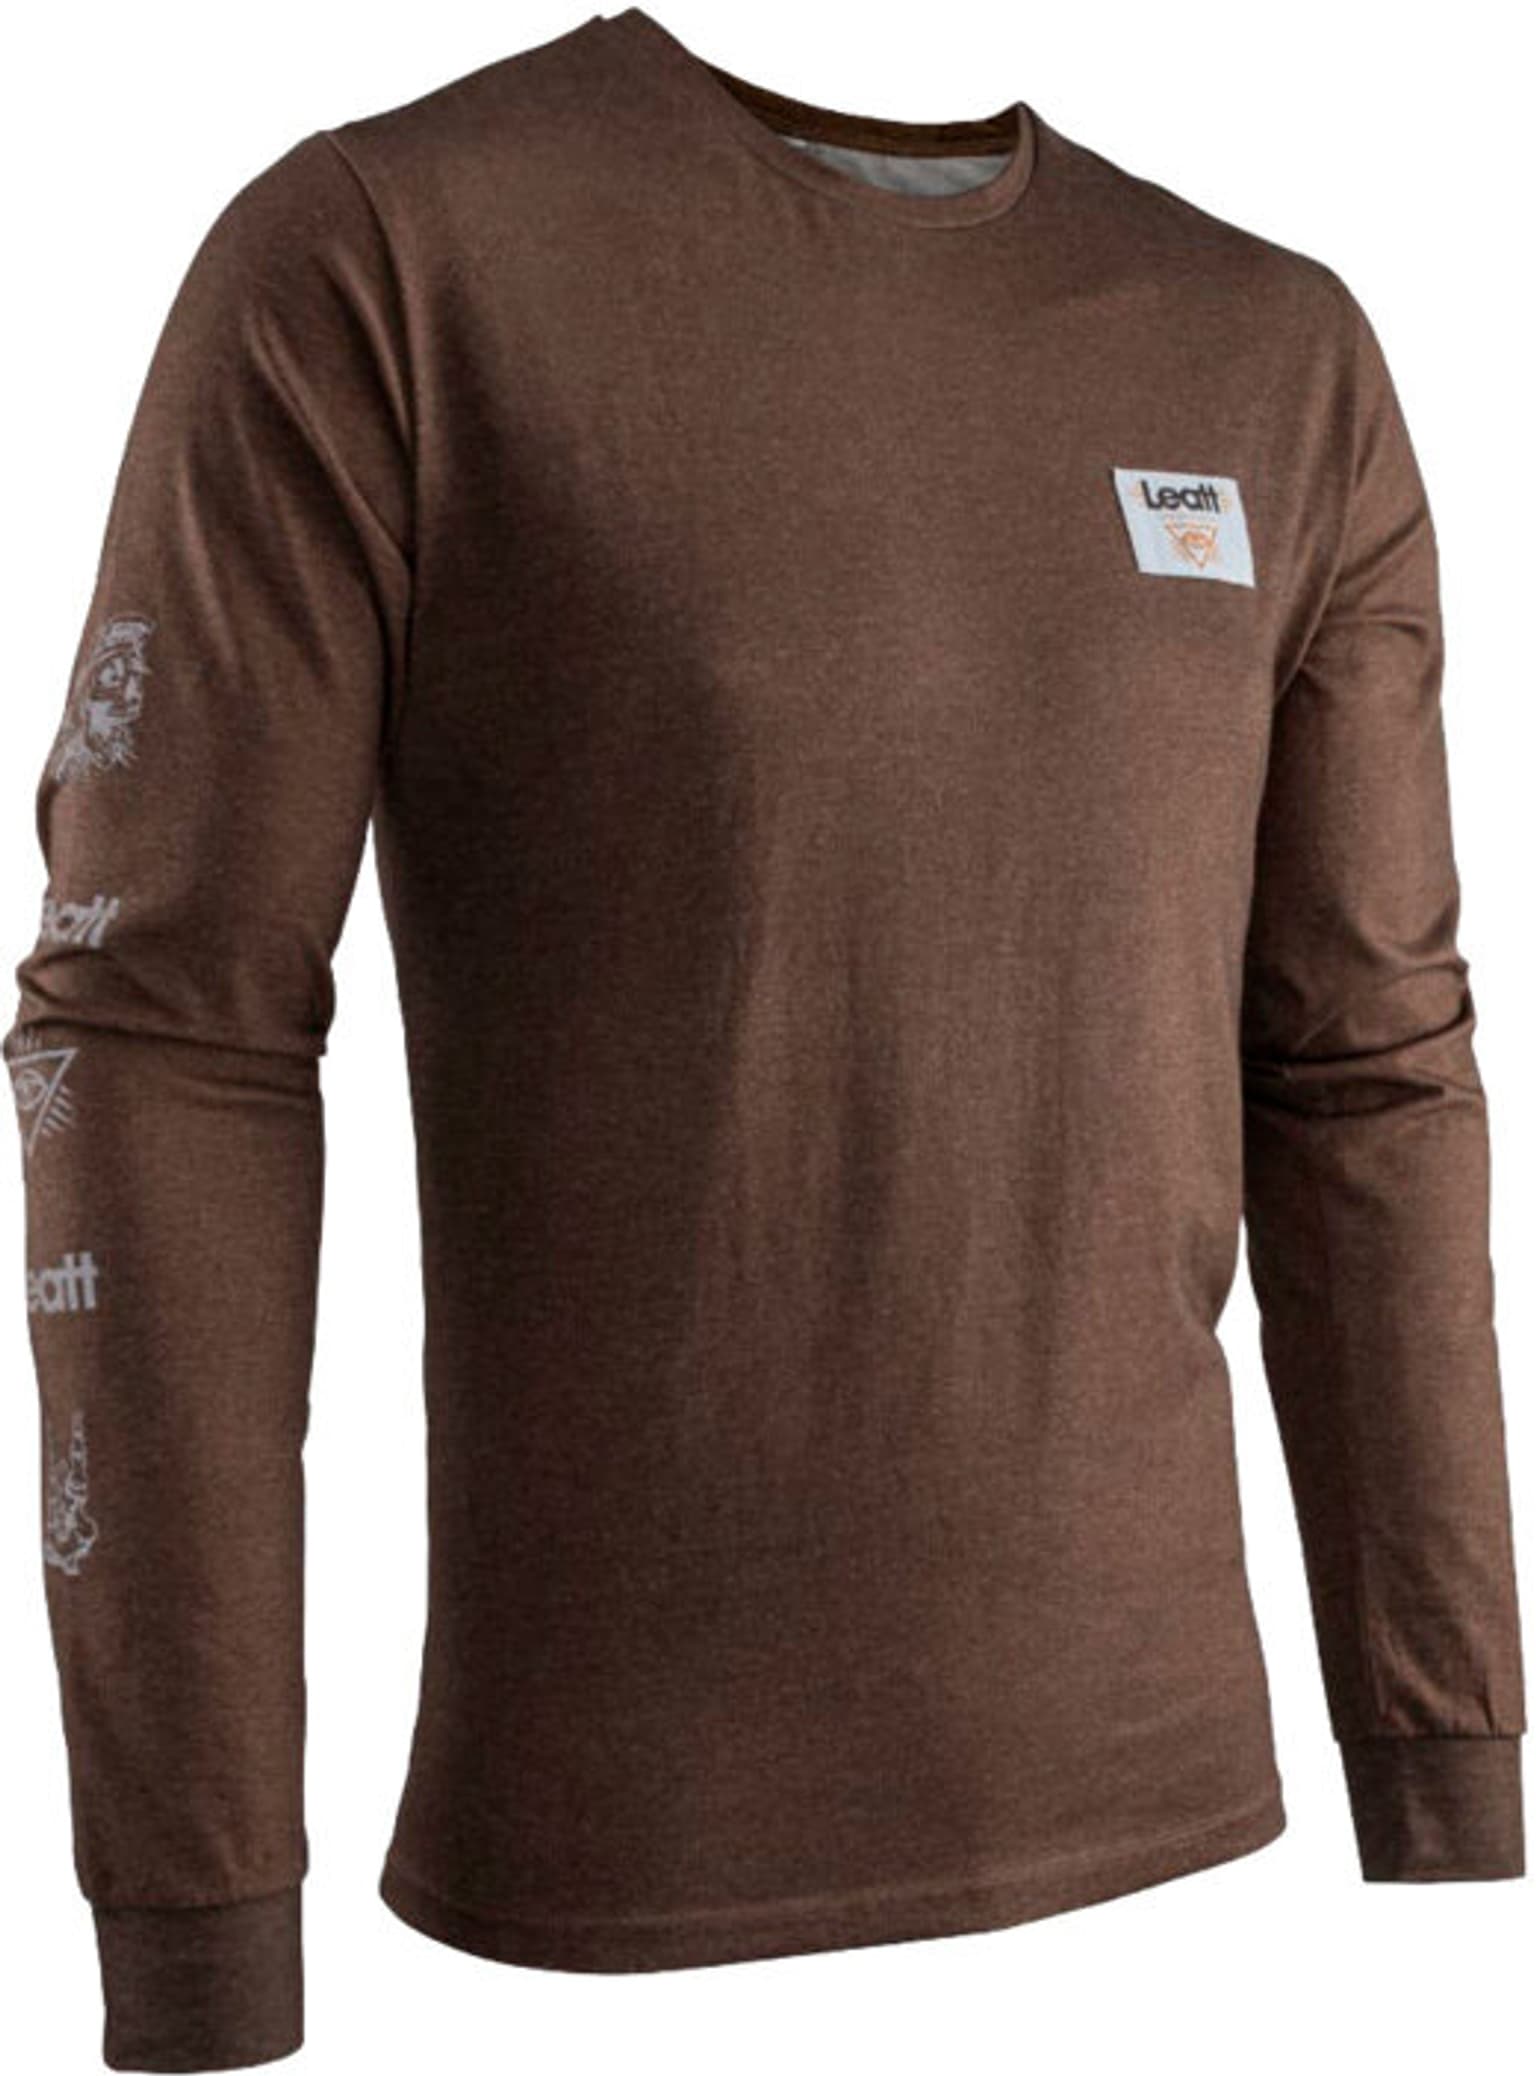 Leatt Leatt Core Long Shirt Langarmshirt marrone 1